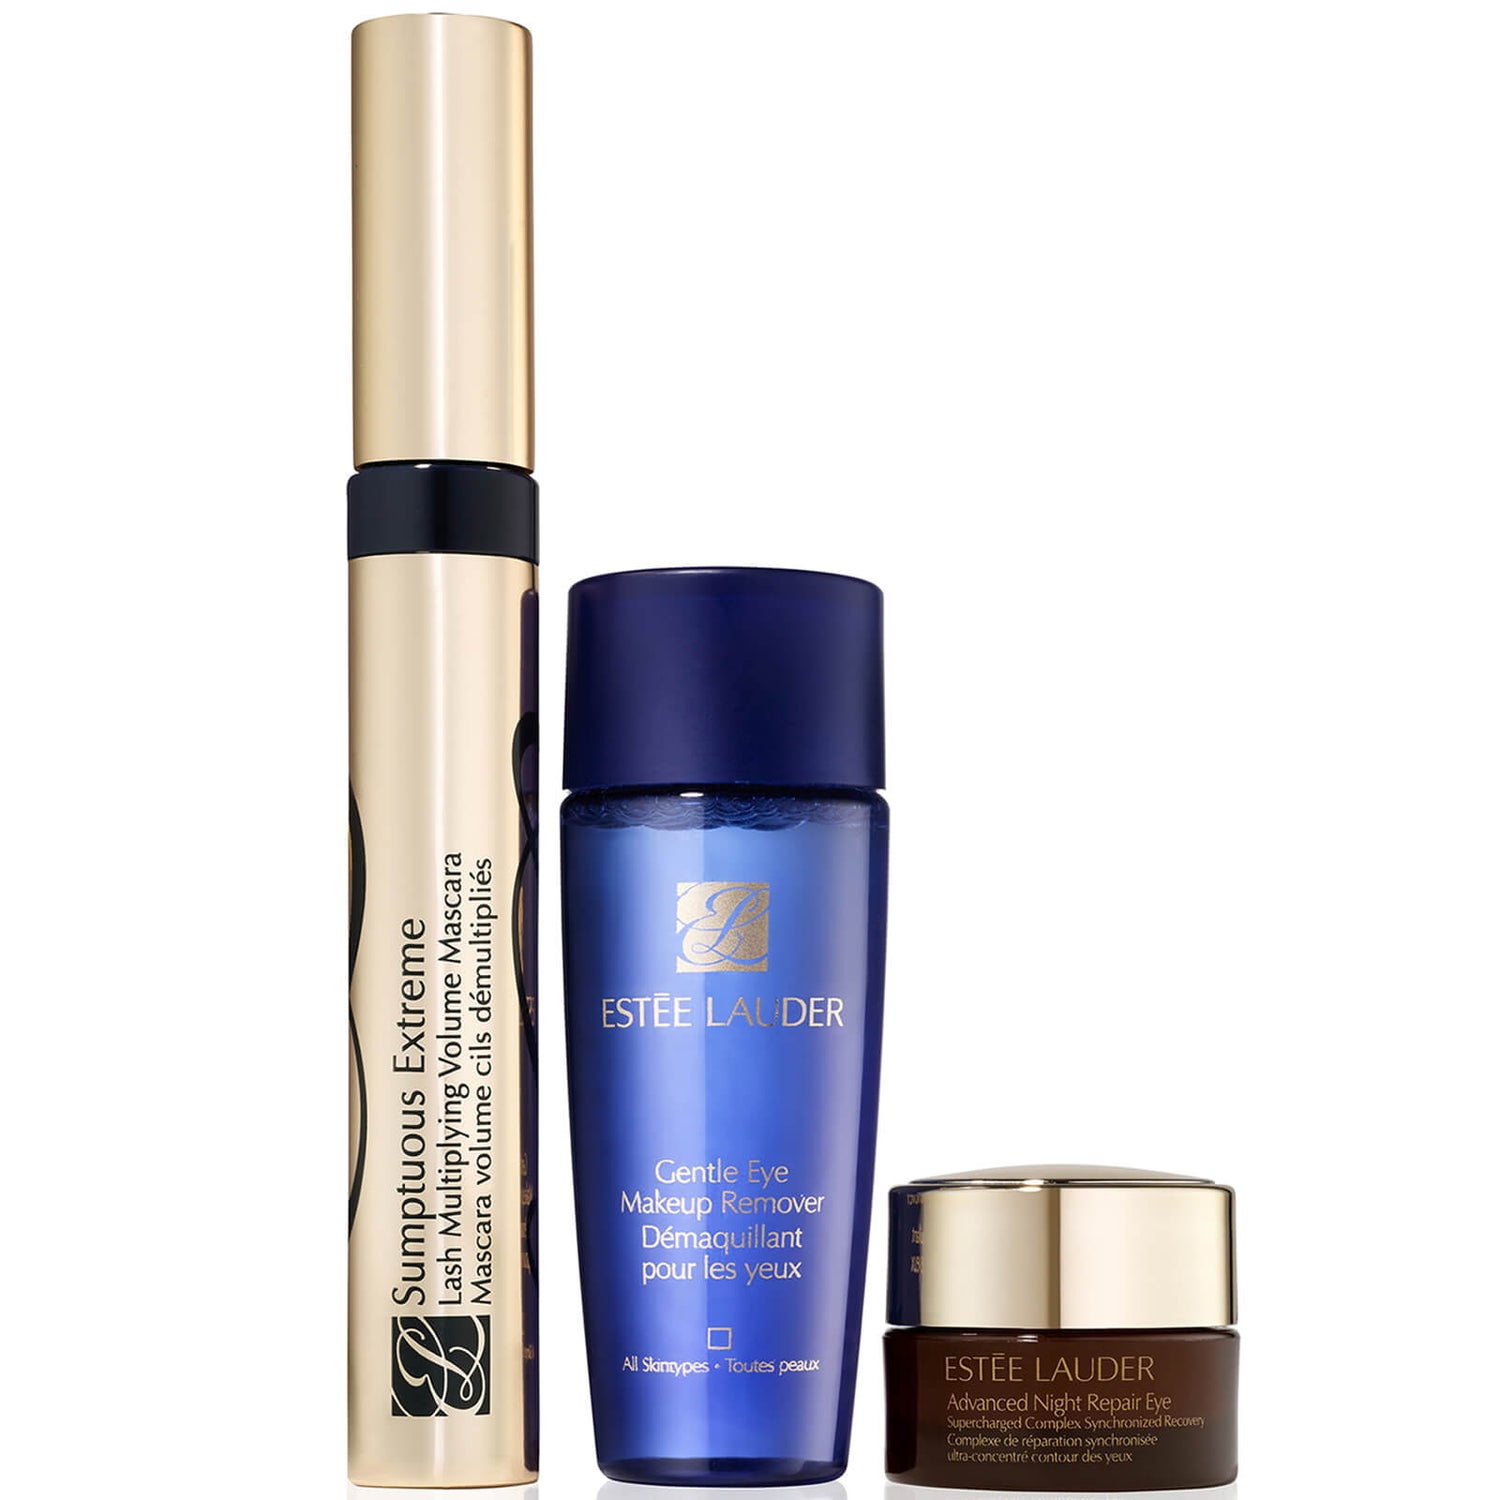 Estée Lauder Mascara Essentials For Brighter, Bolder Eyes Gift Set (Worth $49.00)